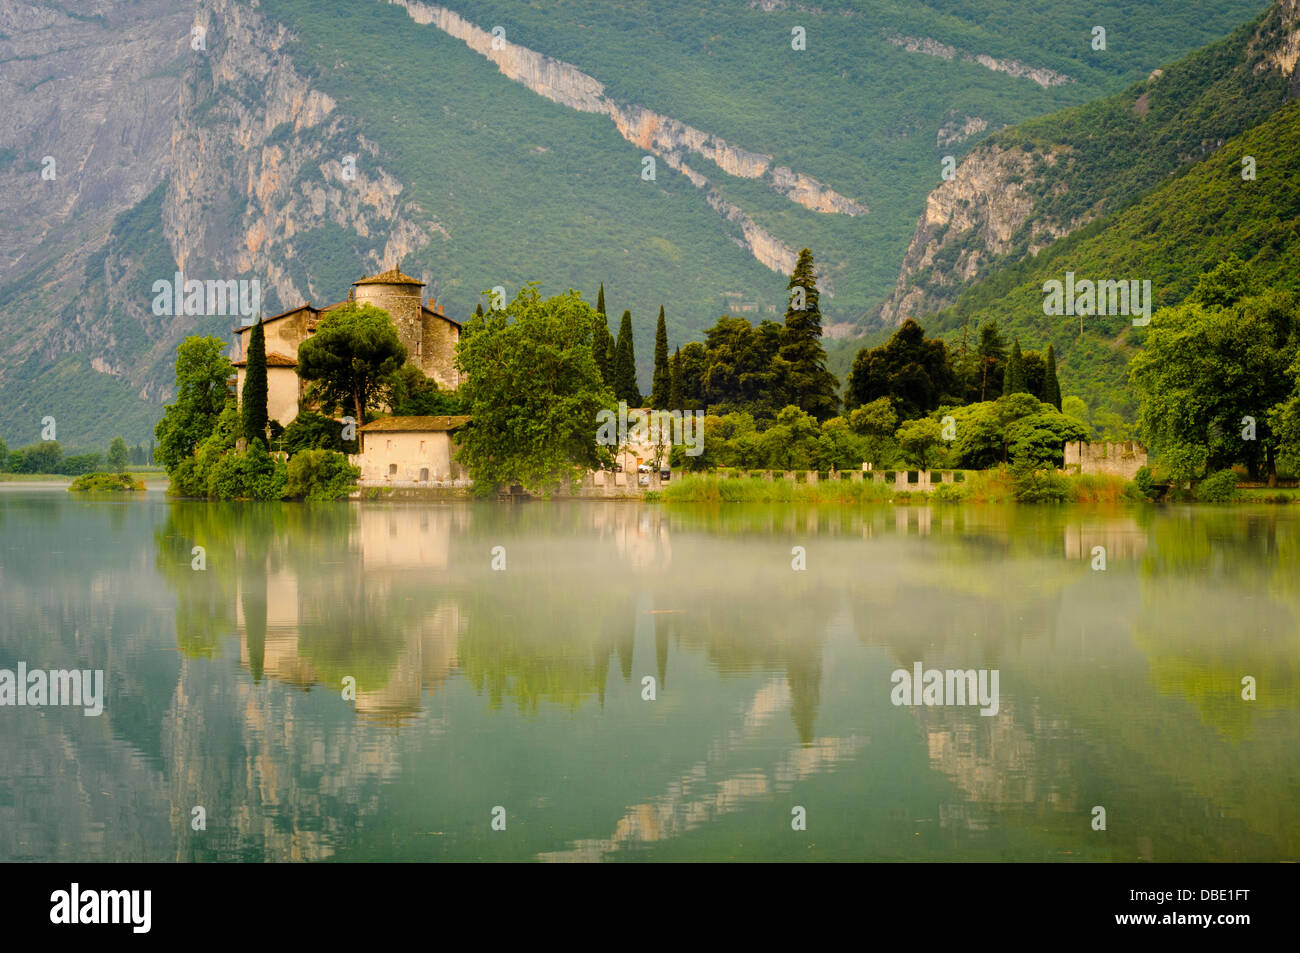 Le Château médiéval de Toblino se reflétant dans les eaux calmes du lac Toblino. Le Trentin, Italie Banque D'Images